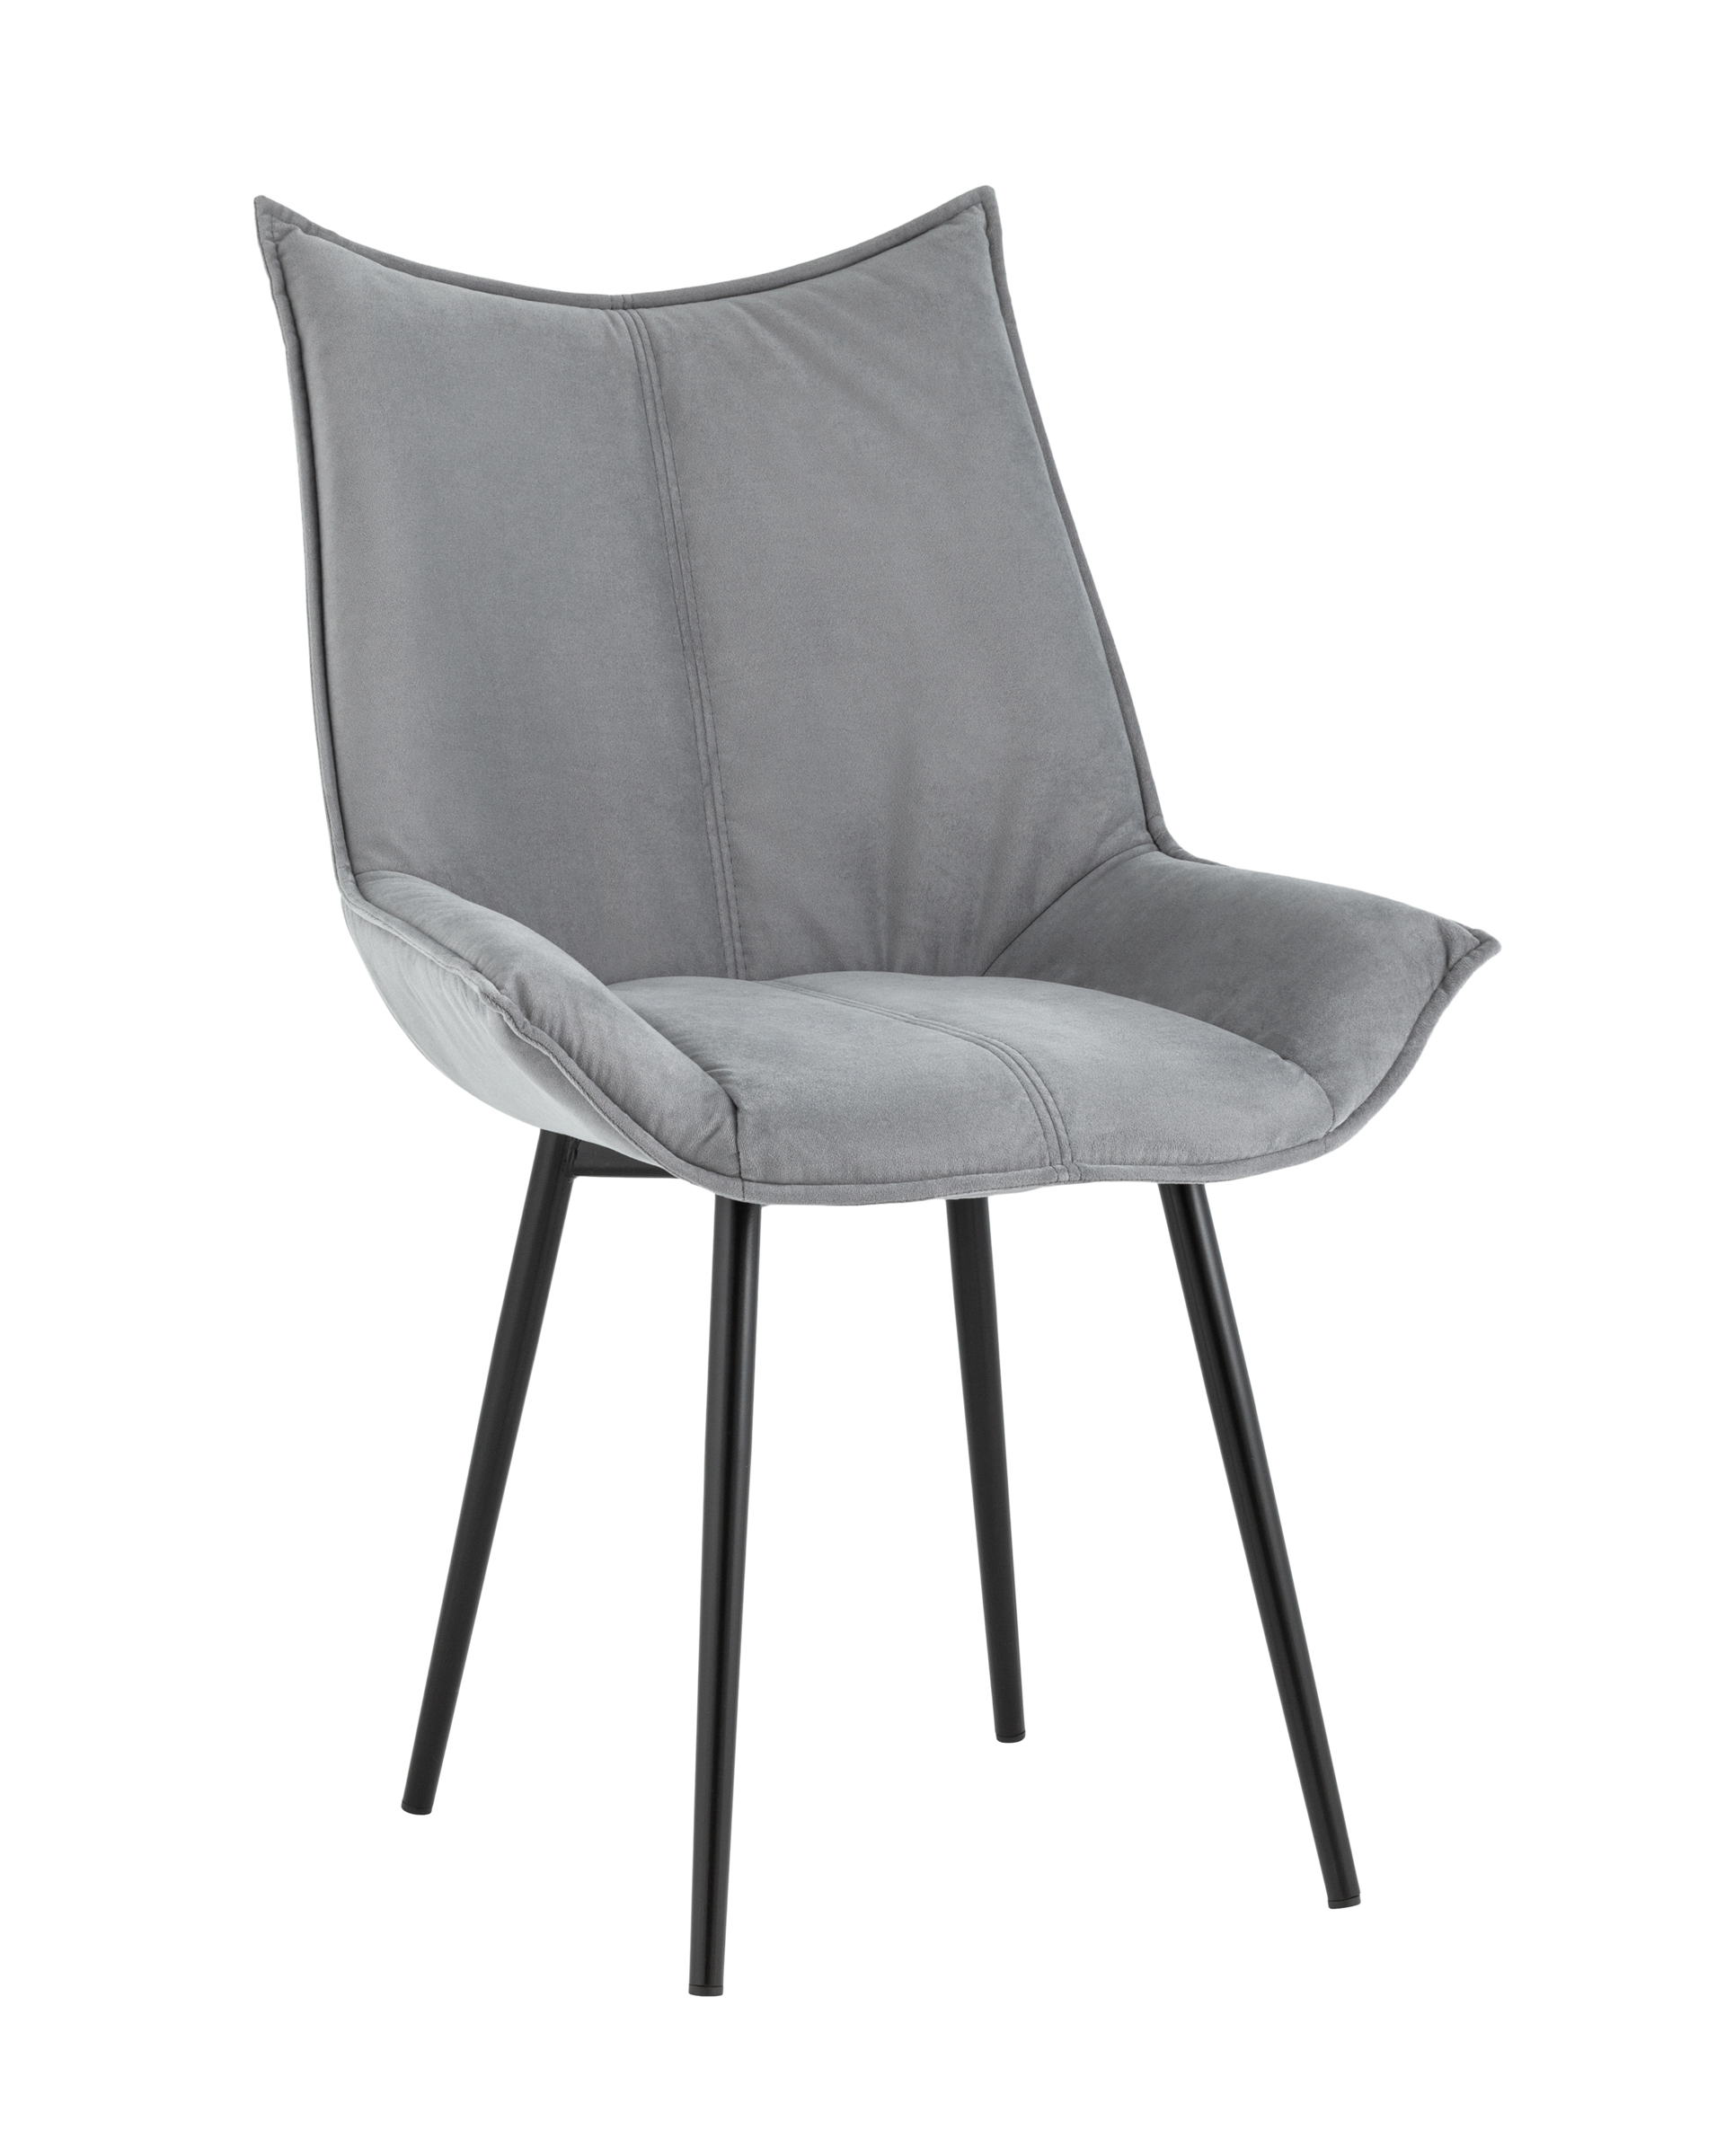 Обеденные стулья Стул осло (stoolgroup) серый 63x90x58 см.